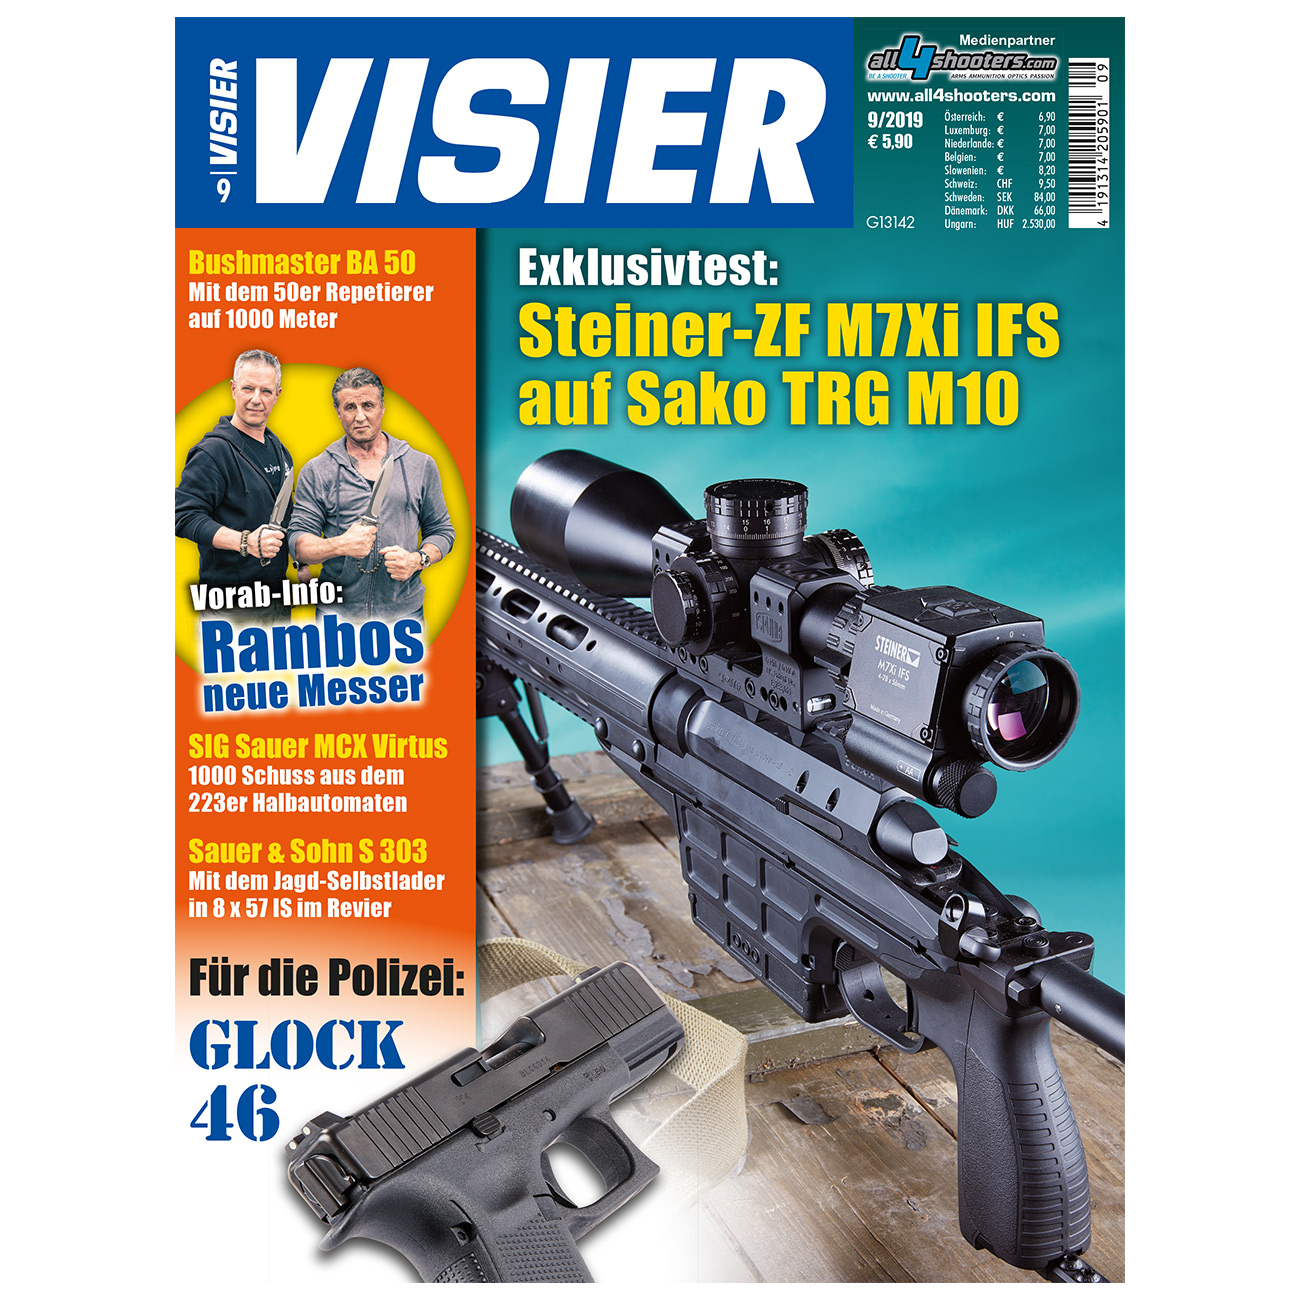 Visier - Exklusivtest: Steiner-ZF M7Xi IFS auf Sako TRG M10 09/2019